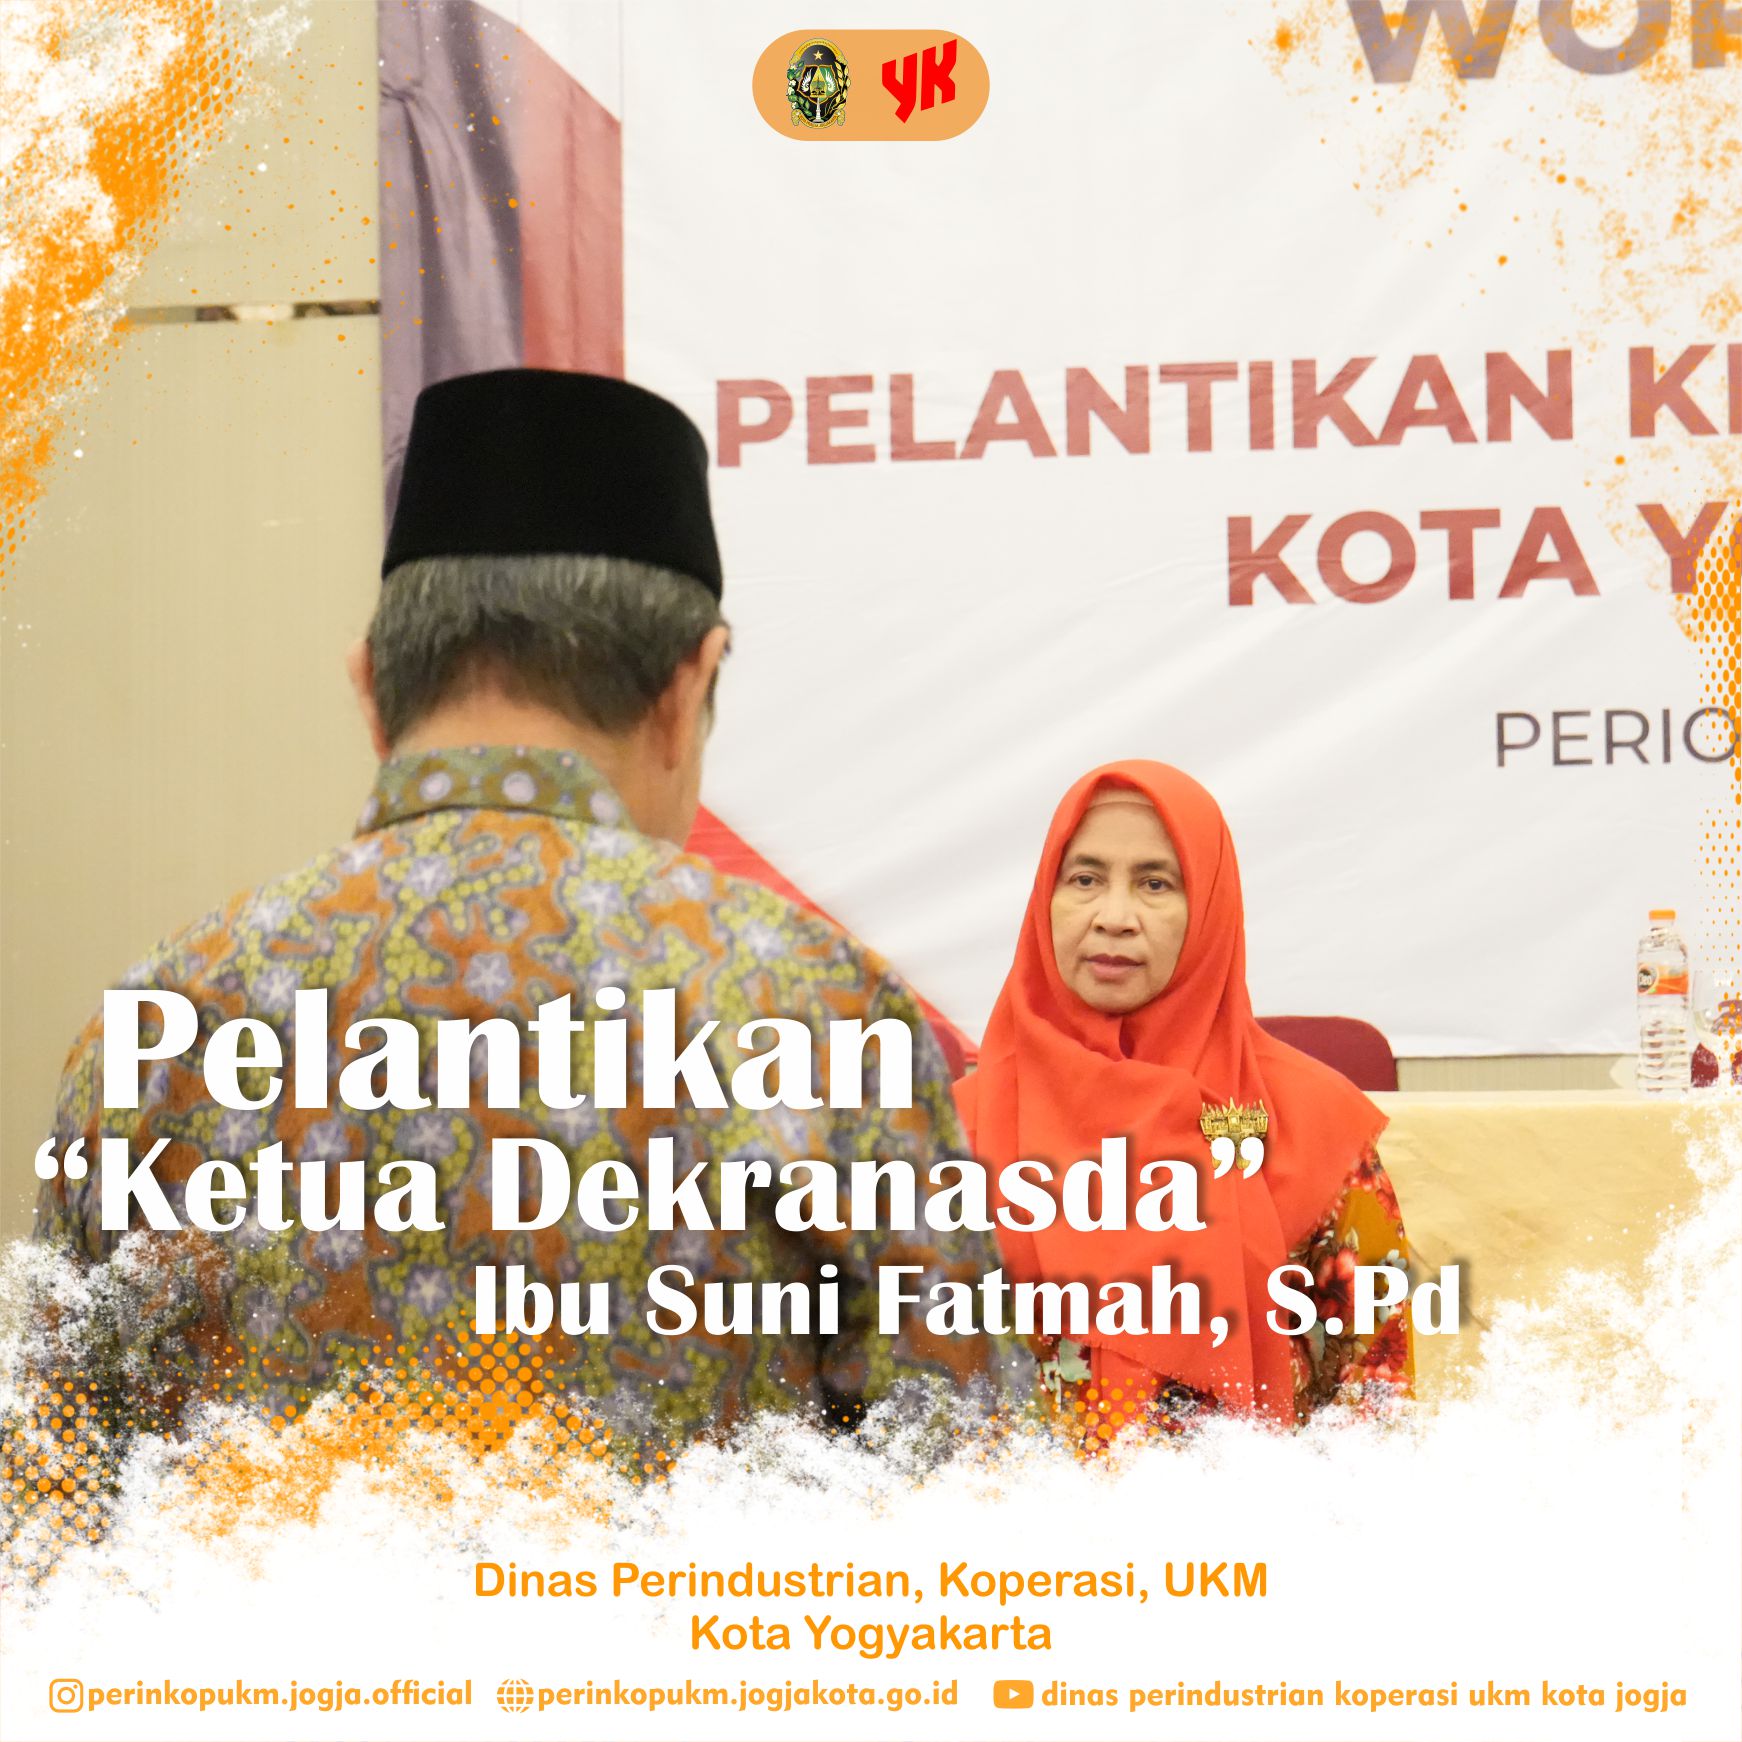 Workshop & Pelantikan Ketua Dekranasda Kota Yogyakarta Bawa Semangat Baru Pelaku Industri Kerajinan